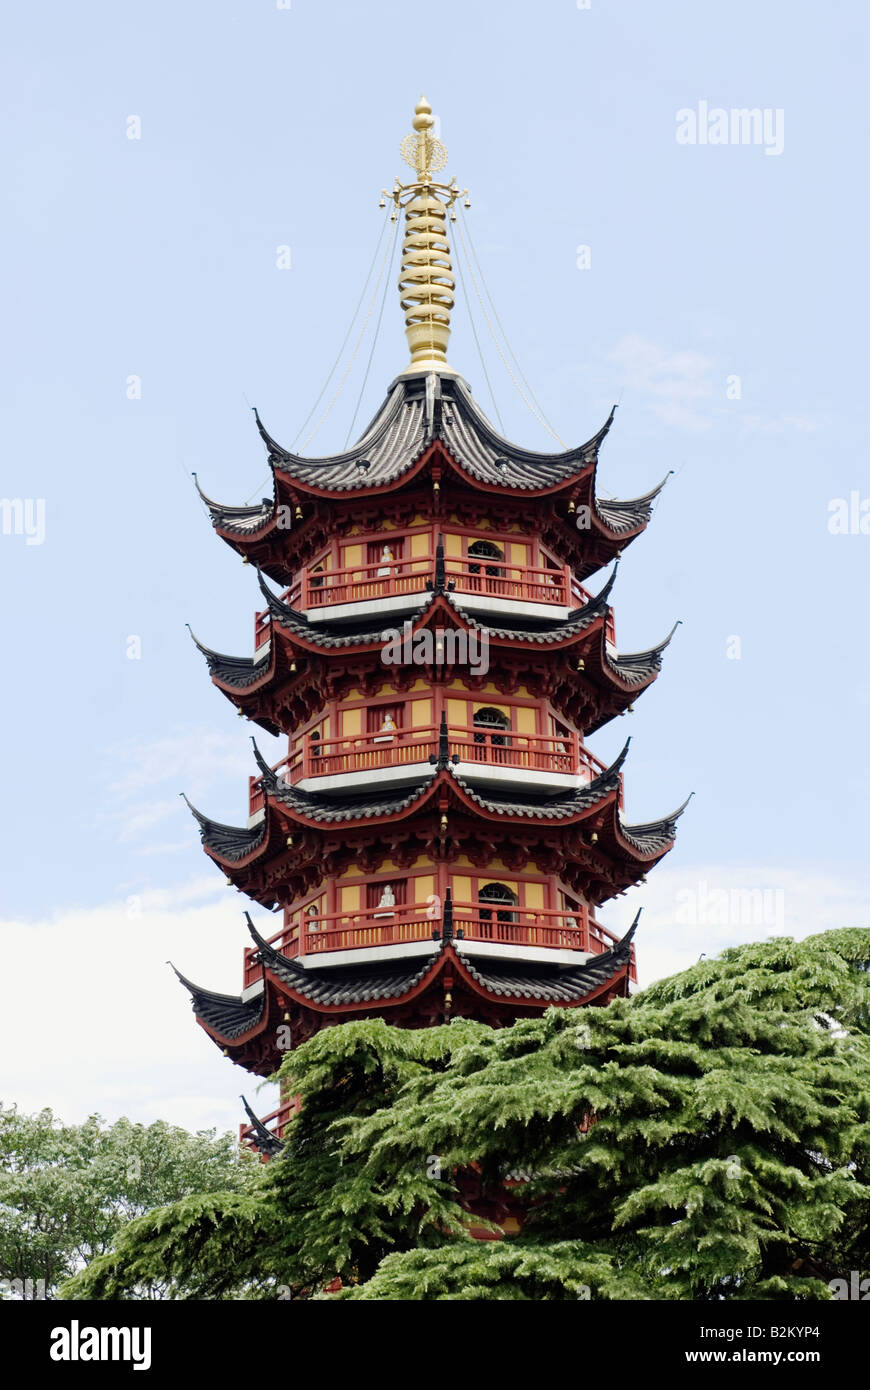 China, Nanjing, Jiming Temple Pagoda Stock Photo